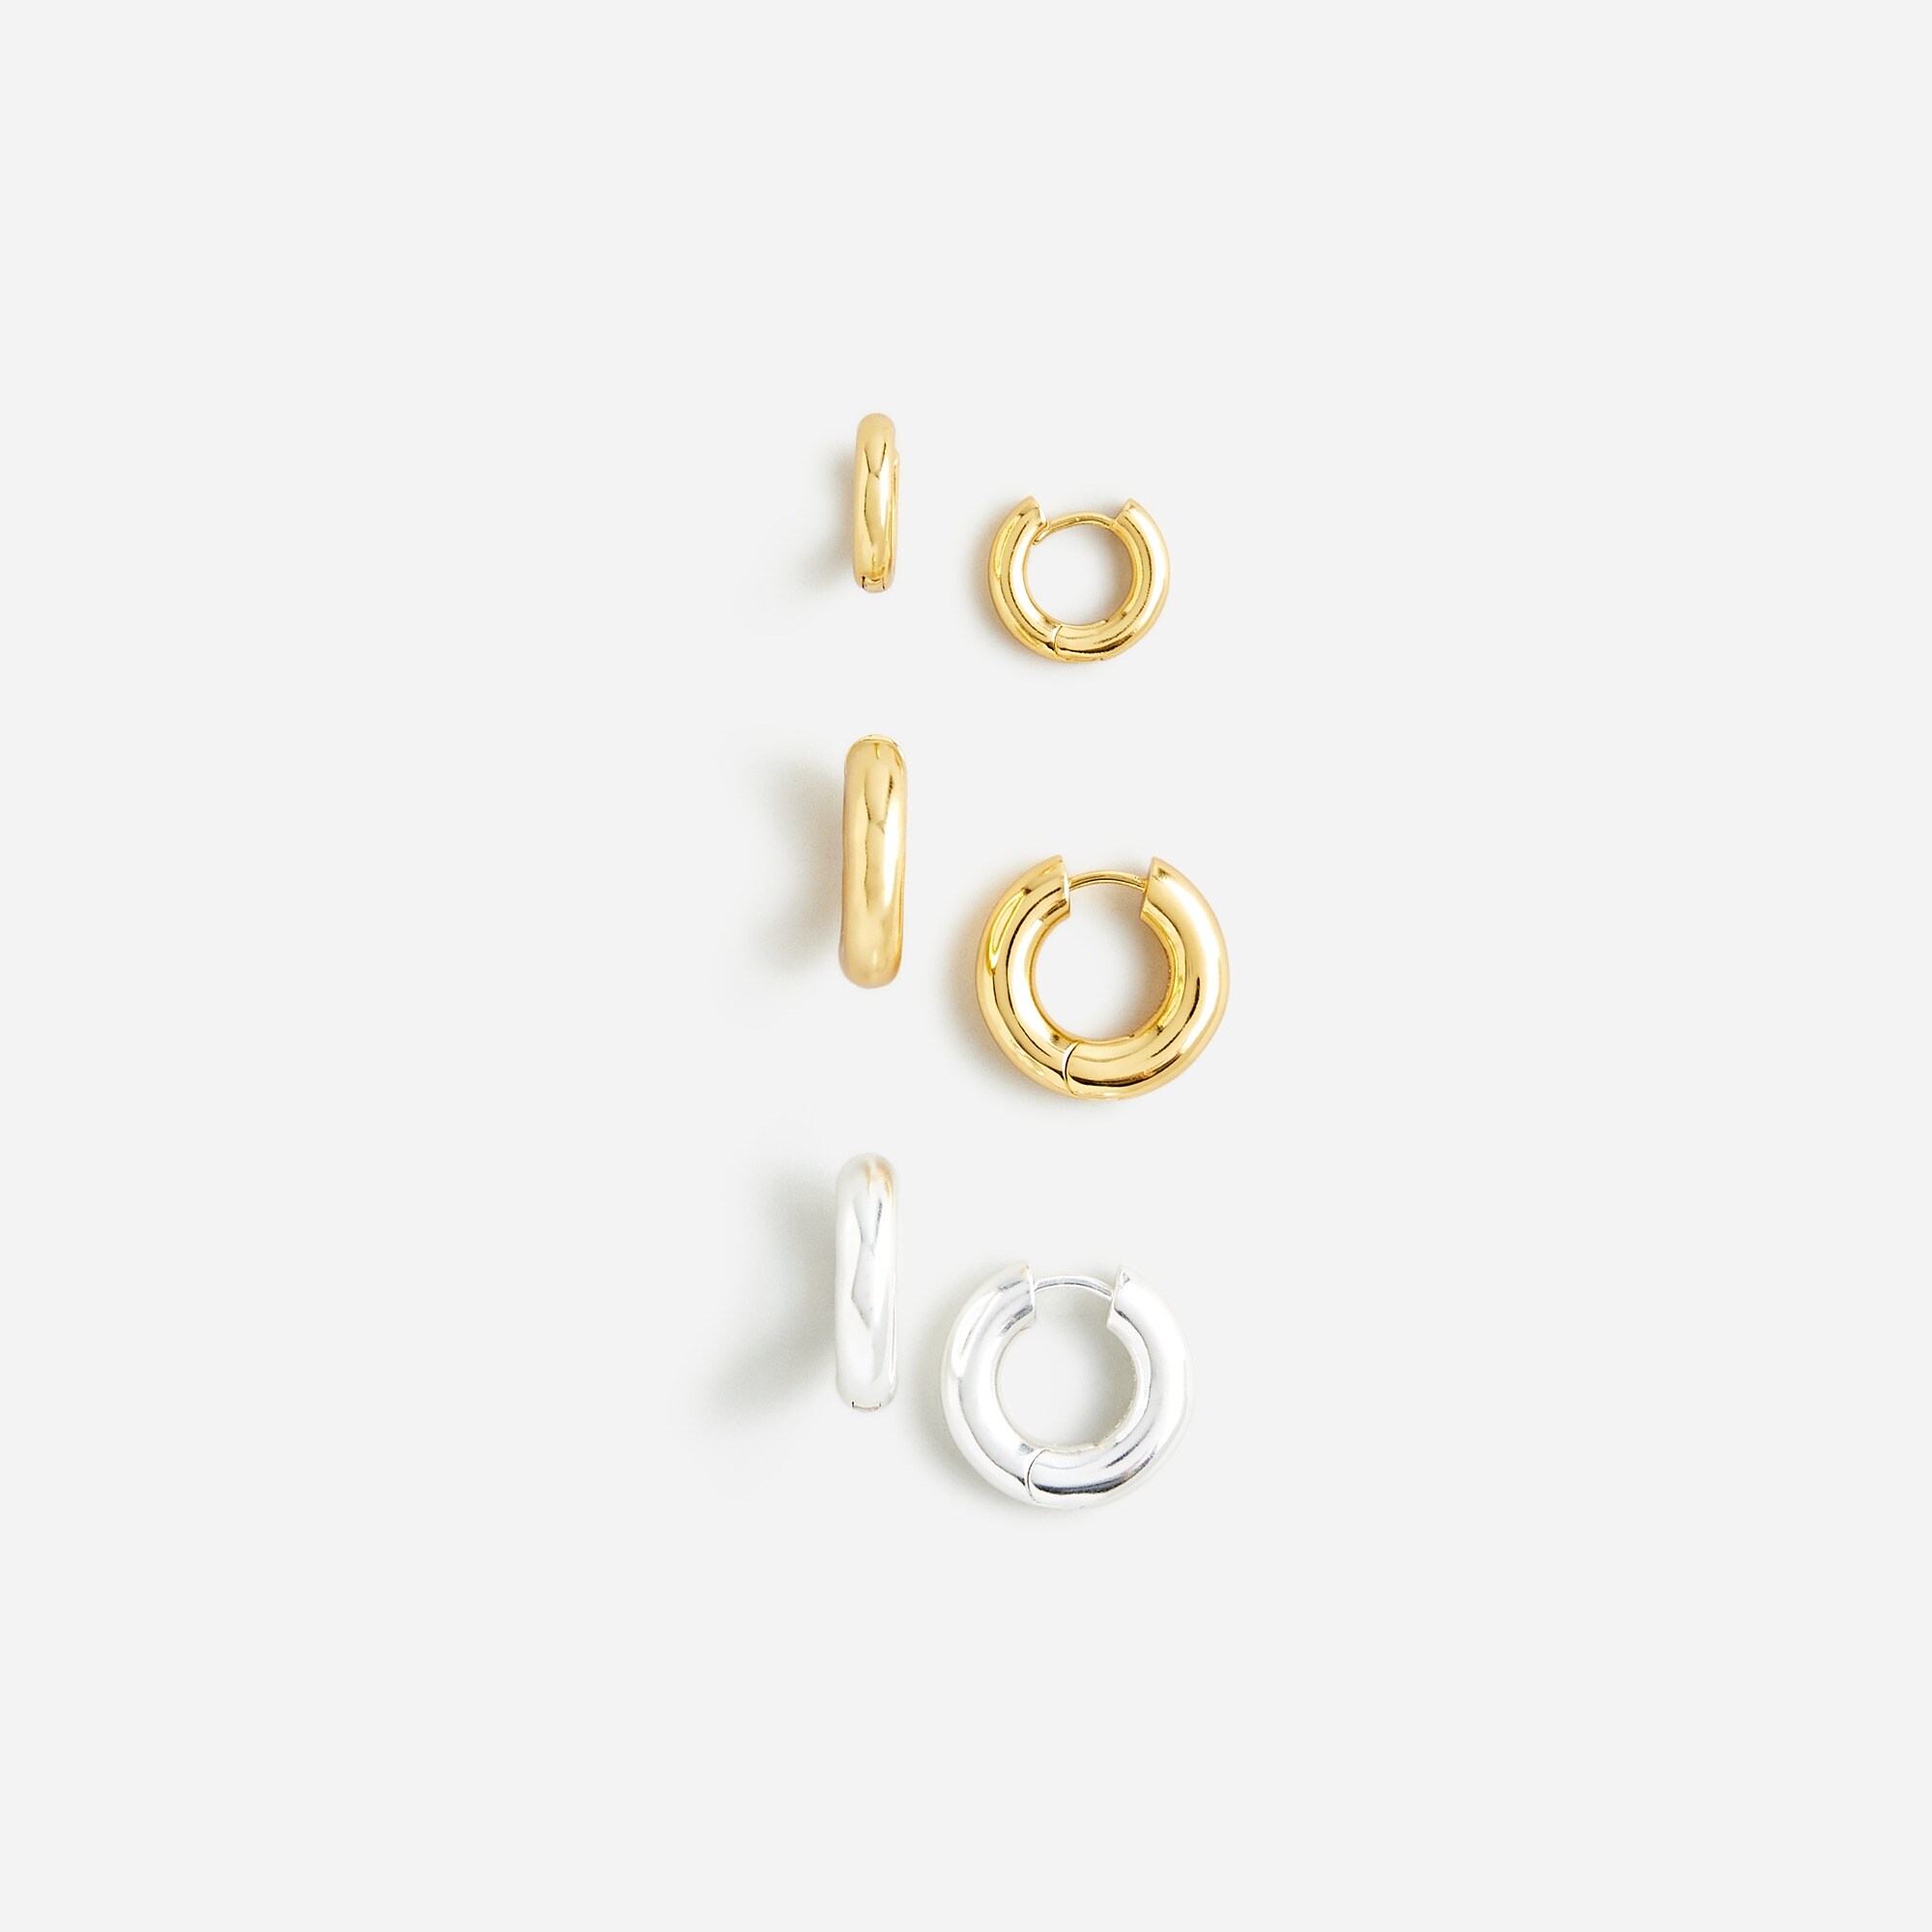  Metallic hoop earrings set-of-three